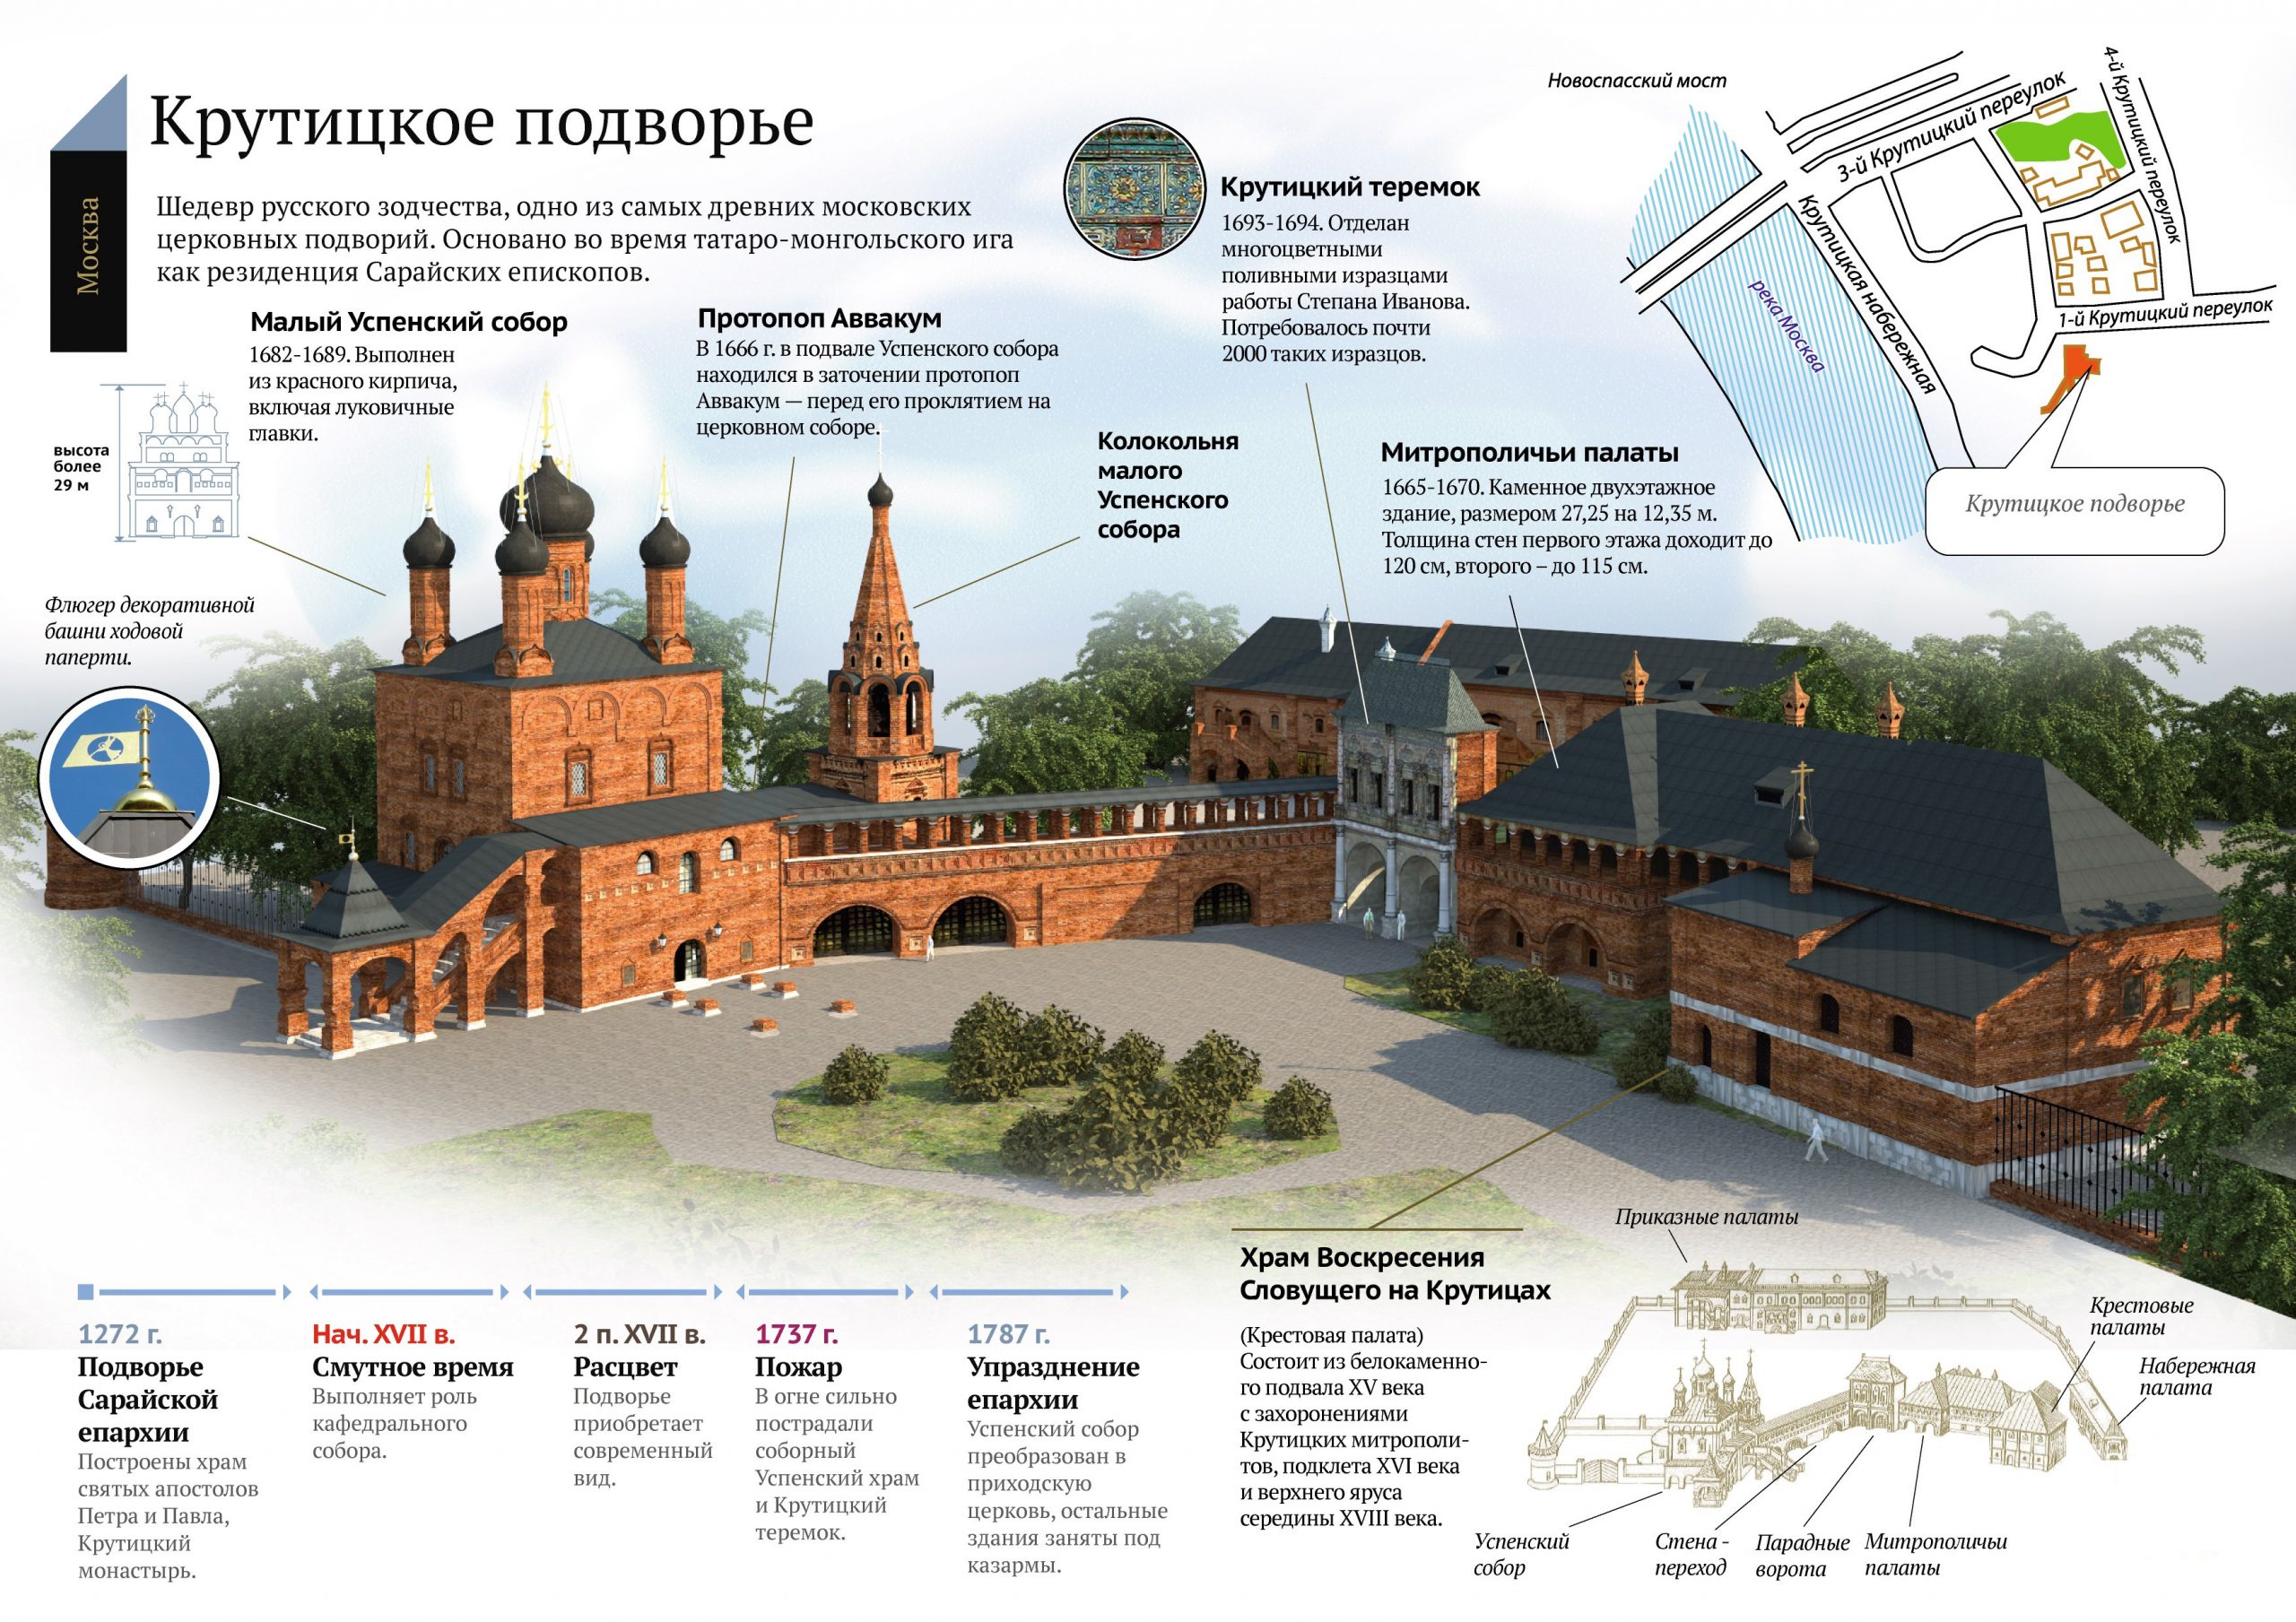 Схема Крутицкого подворья в Москве с ключевыми историческими периодами